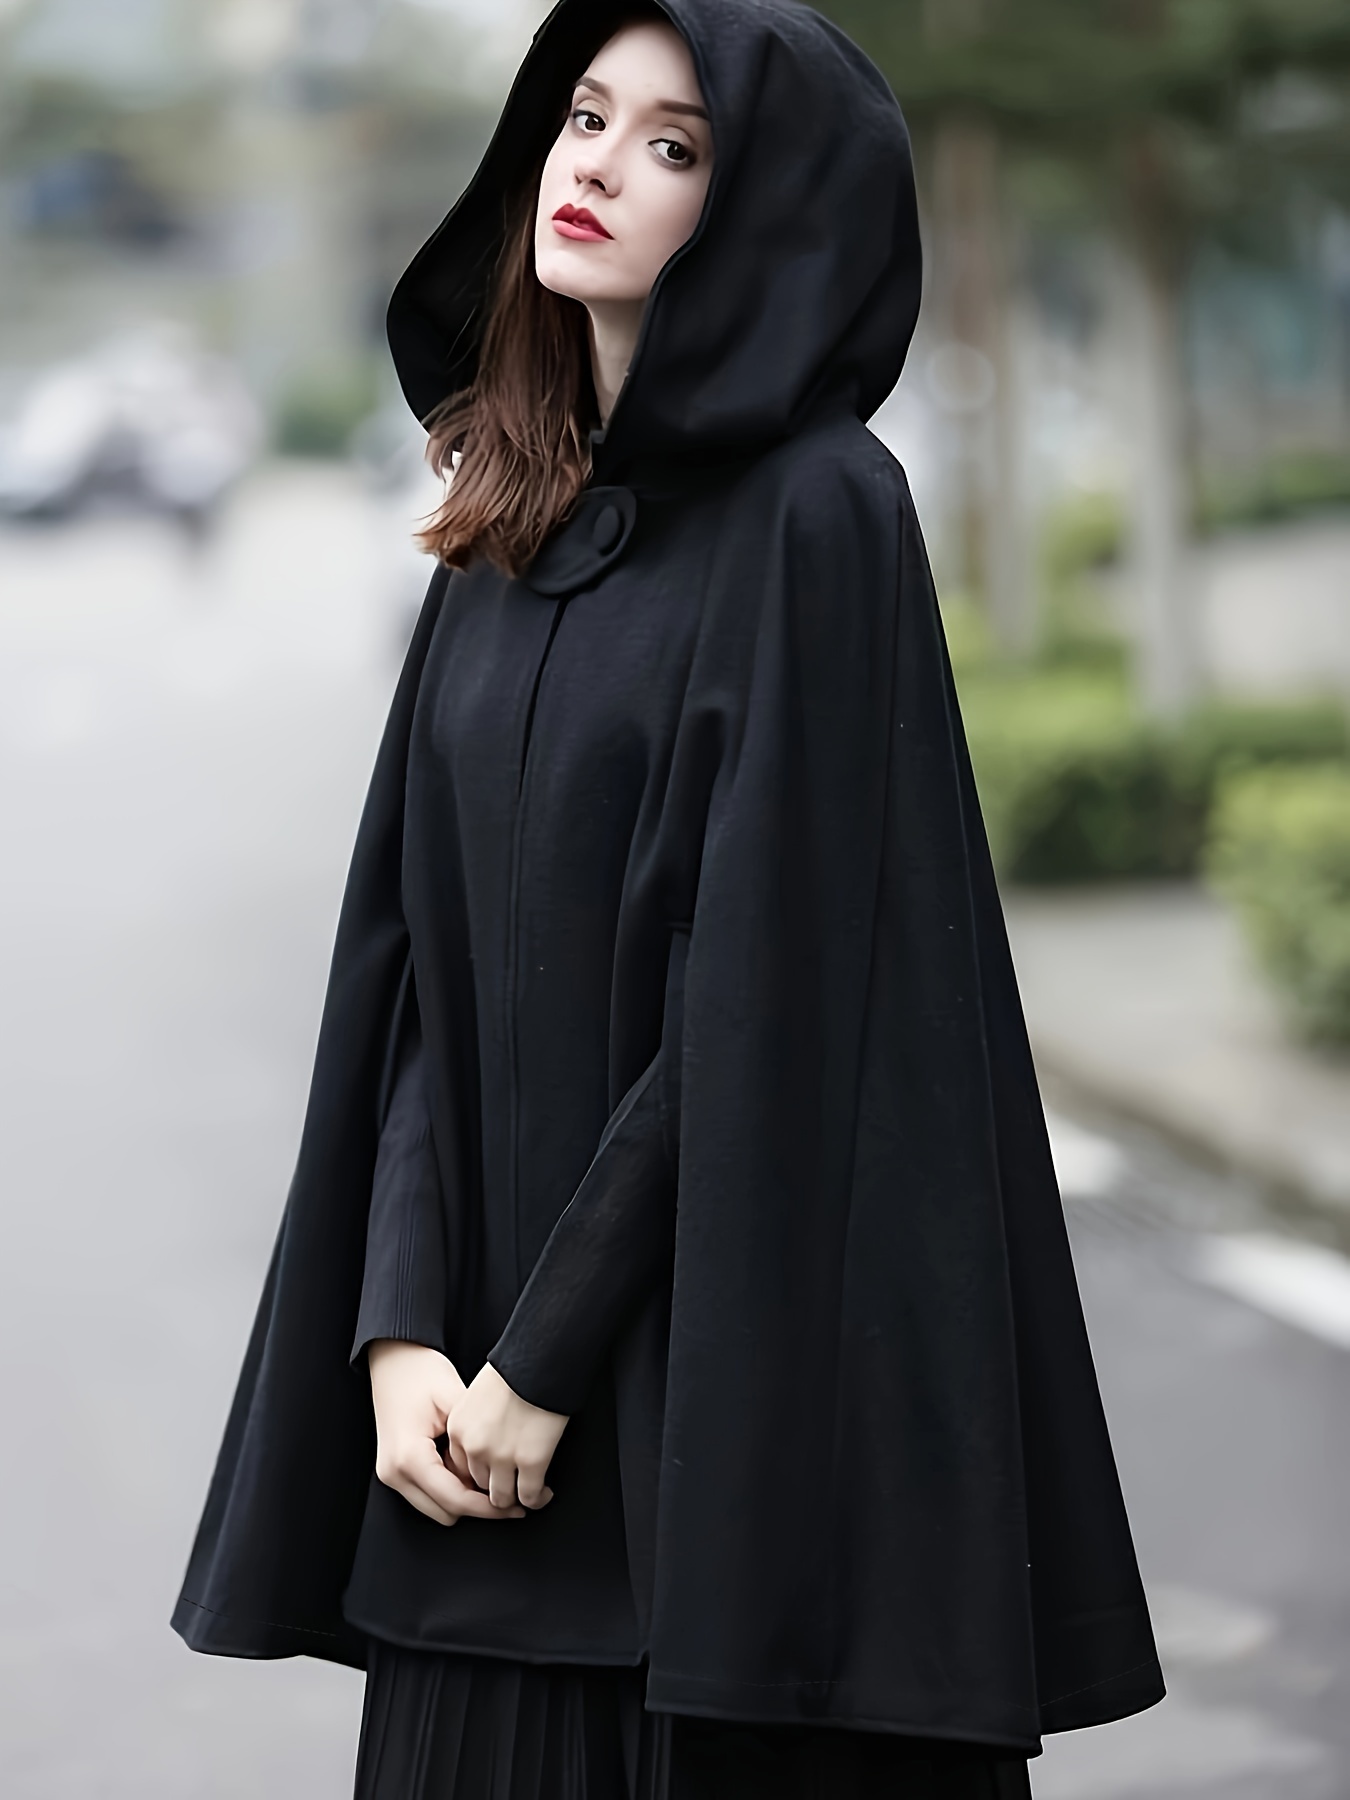 Capa con capucha para mujer, capa de bruja para adultos, disfraz de  Navidad, Halloween, color blanco y negro